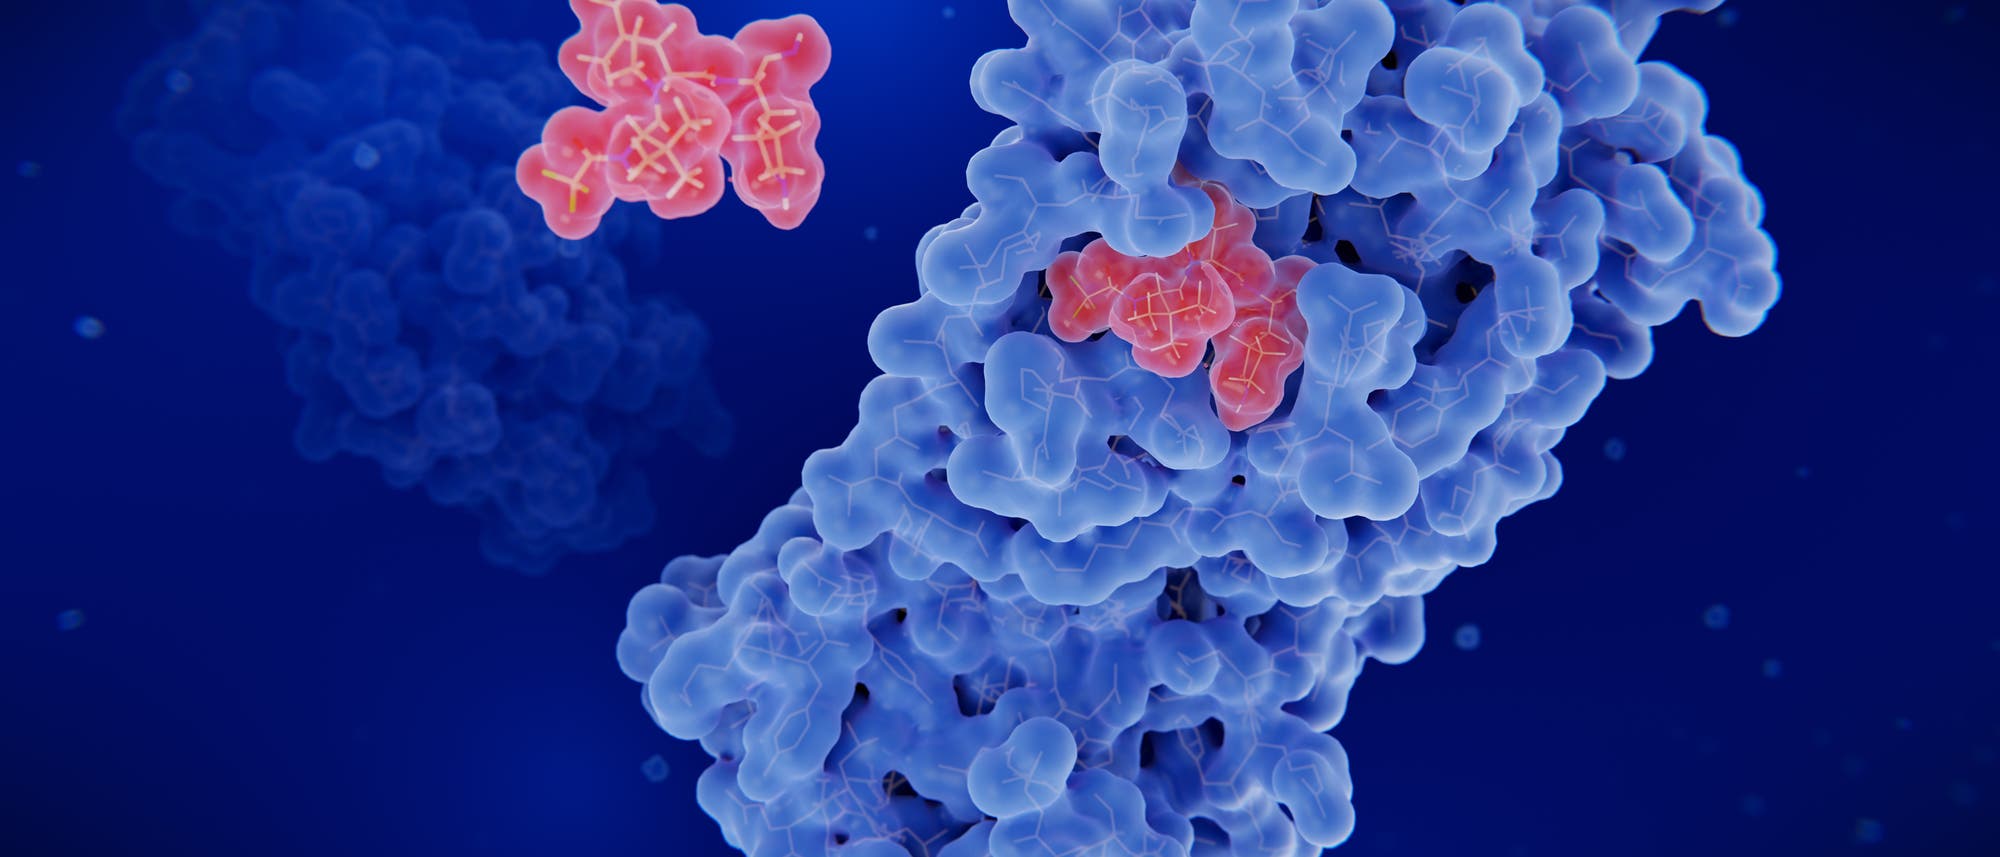 Corona-Protease mit Inhibitor vor blauem Hintergrund.